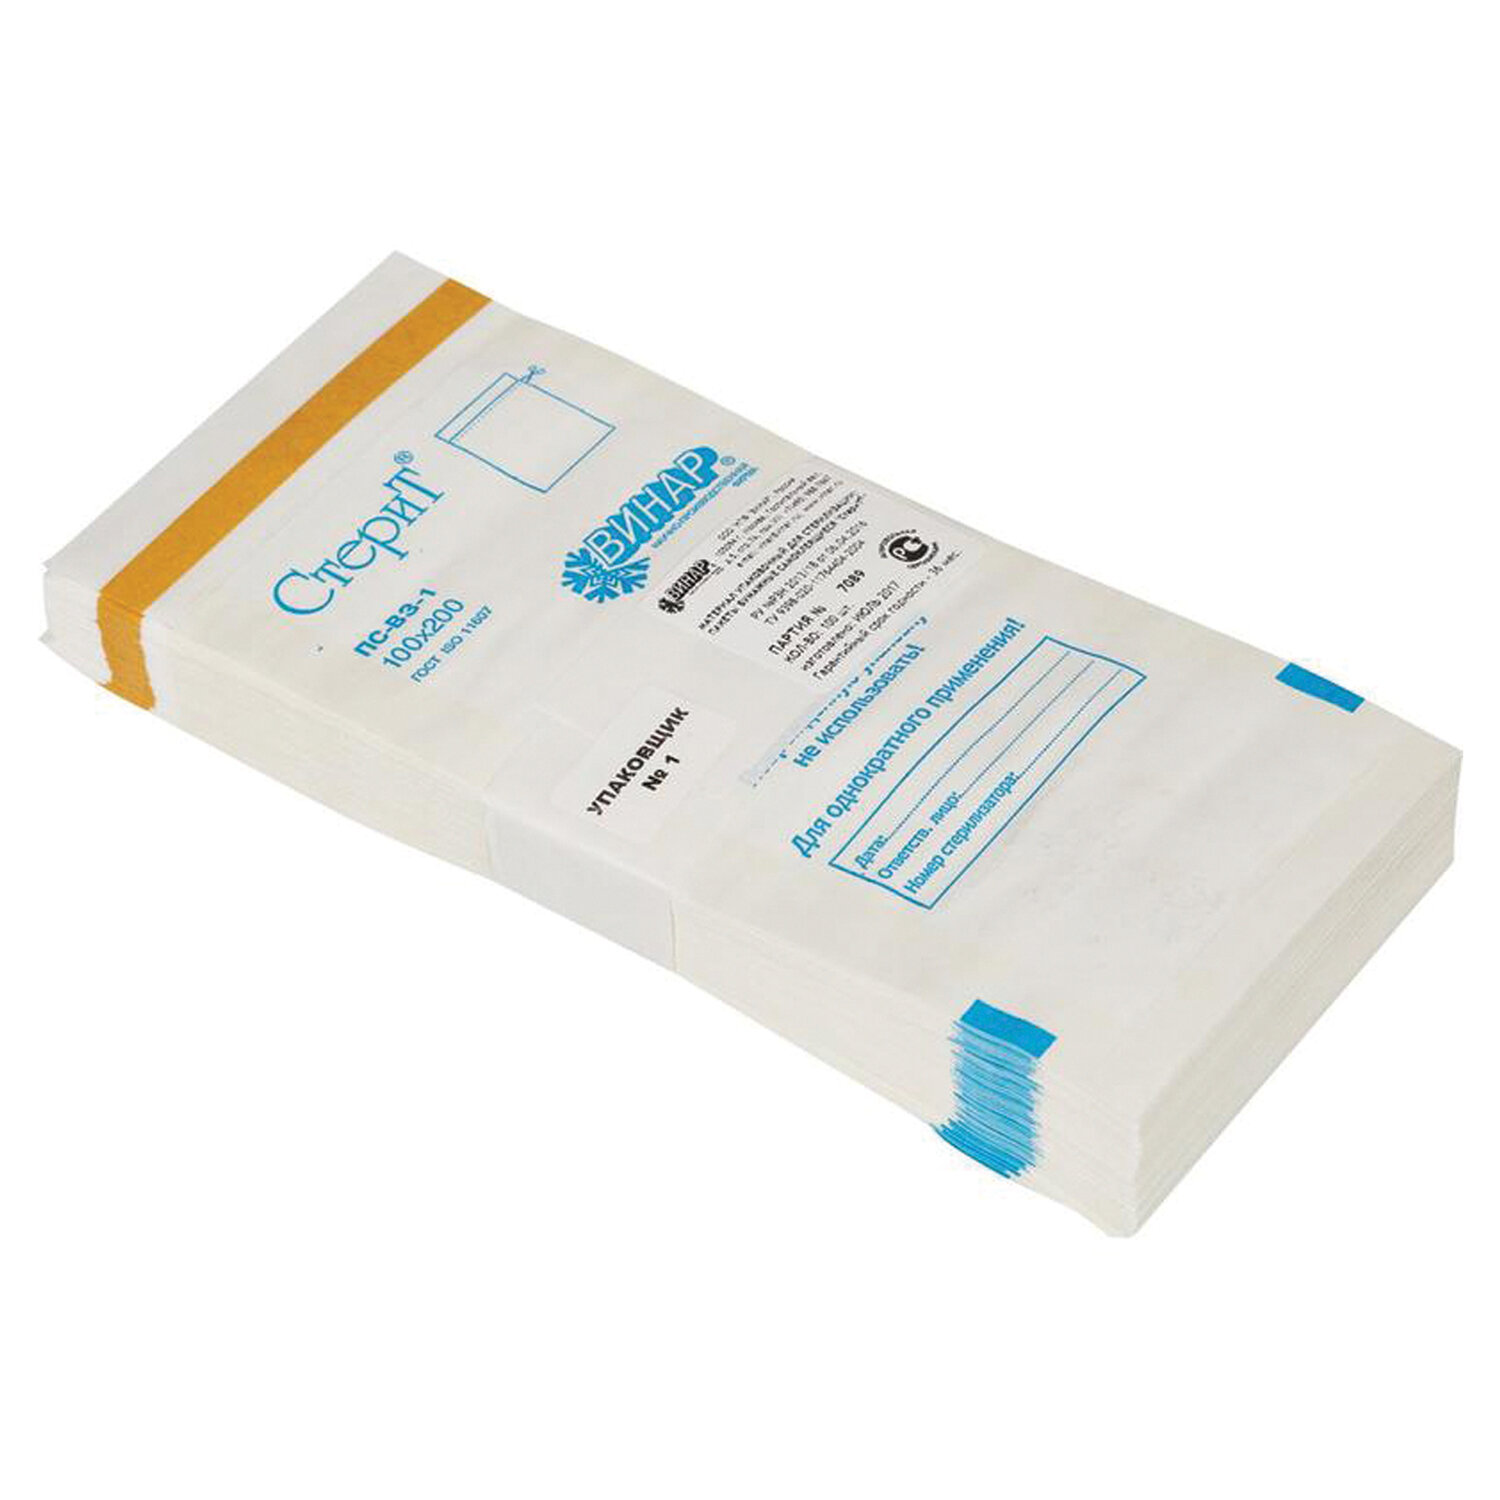 Пакет бумажный самоклеящийся ВИНАР 3 СТЕРИТ, комплект 2 упаковки по 100 шт., для паровой, воздушной стерилизации, 100х200 мм